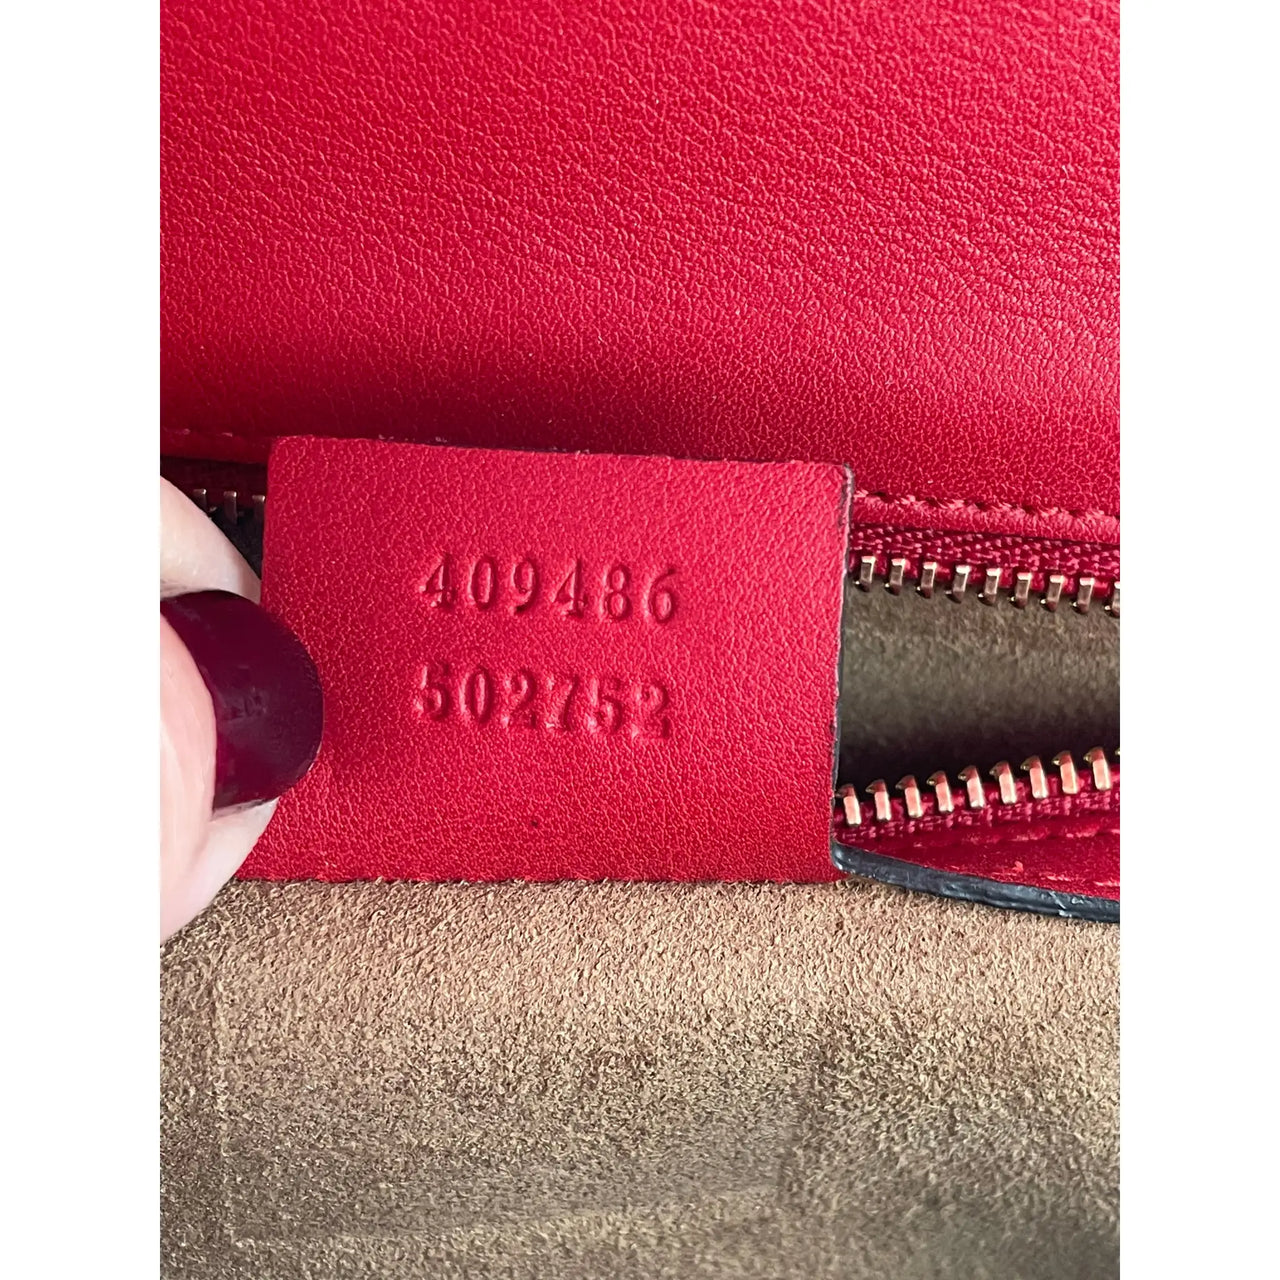 Gucci Vintage Padlock Bag Charm